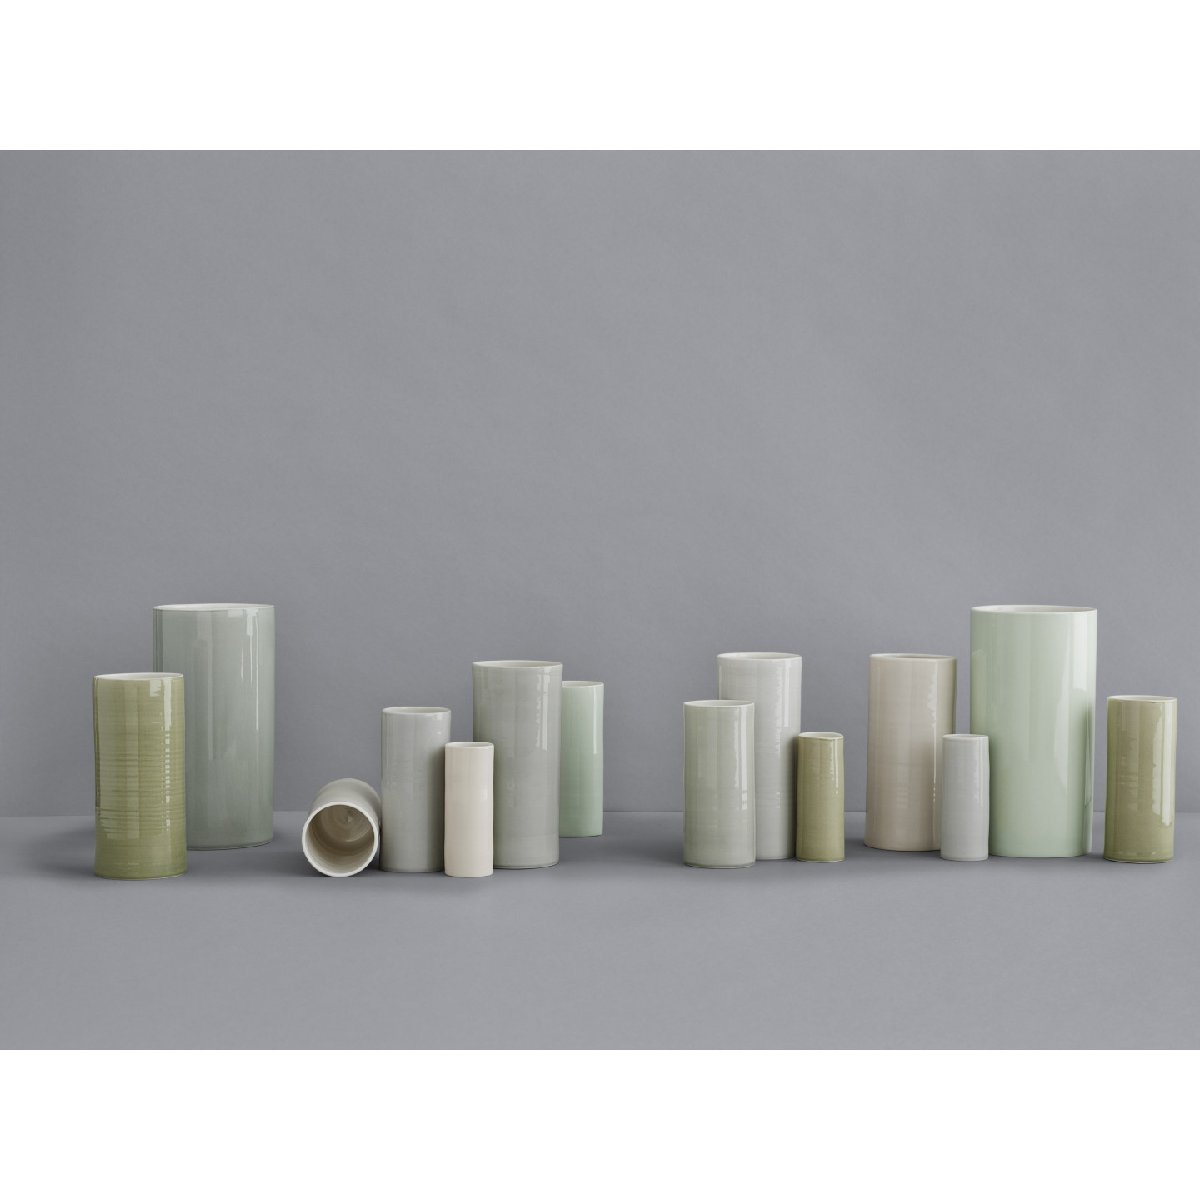 Anne Black | "bloom" porcelain vase - collection